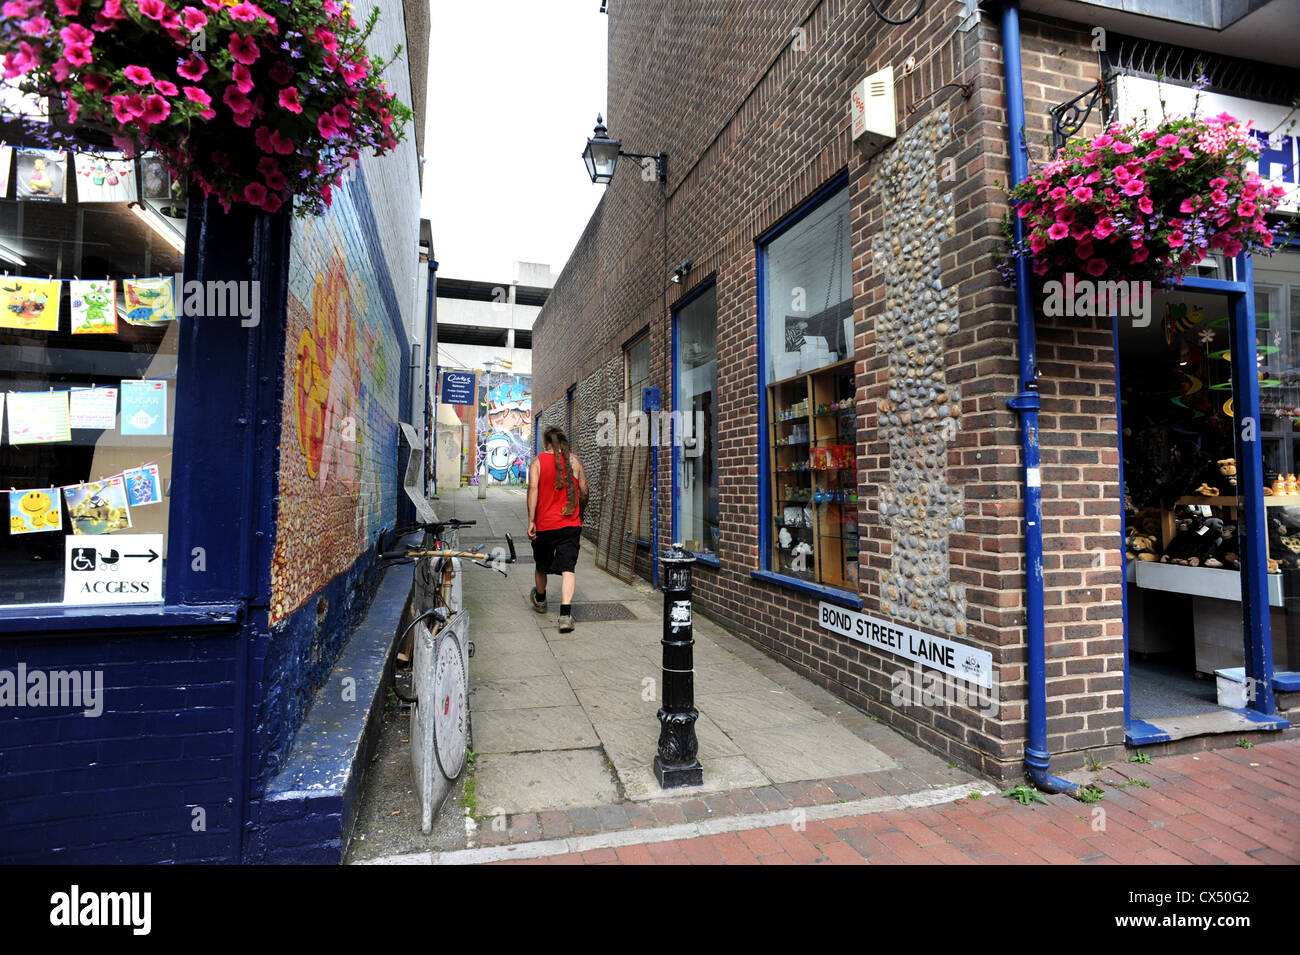 Un uomo cammina verso il basso Bond Street Laine in Brighton, gli storici locali dire laine si applica solo alle zone che una volta erano i seminativi Foto Stock